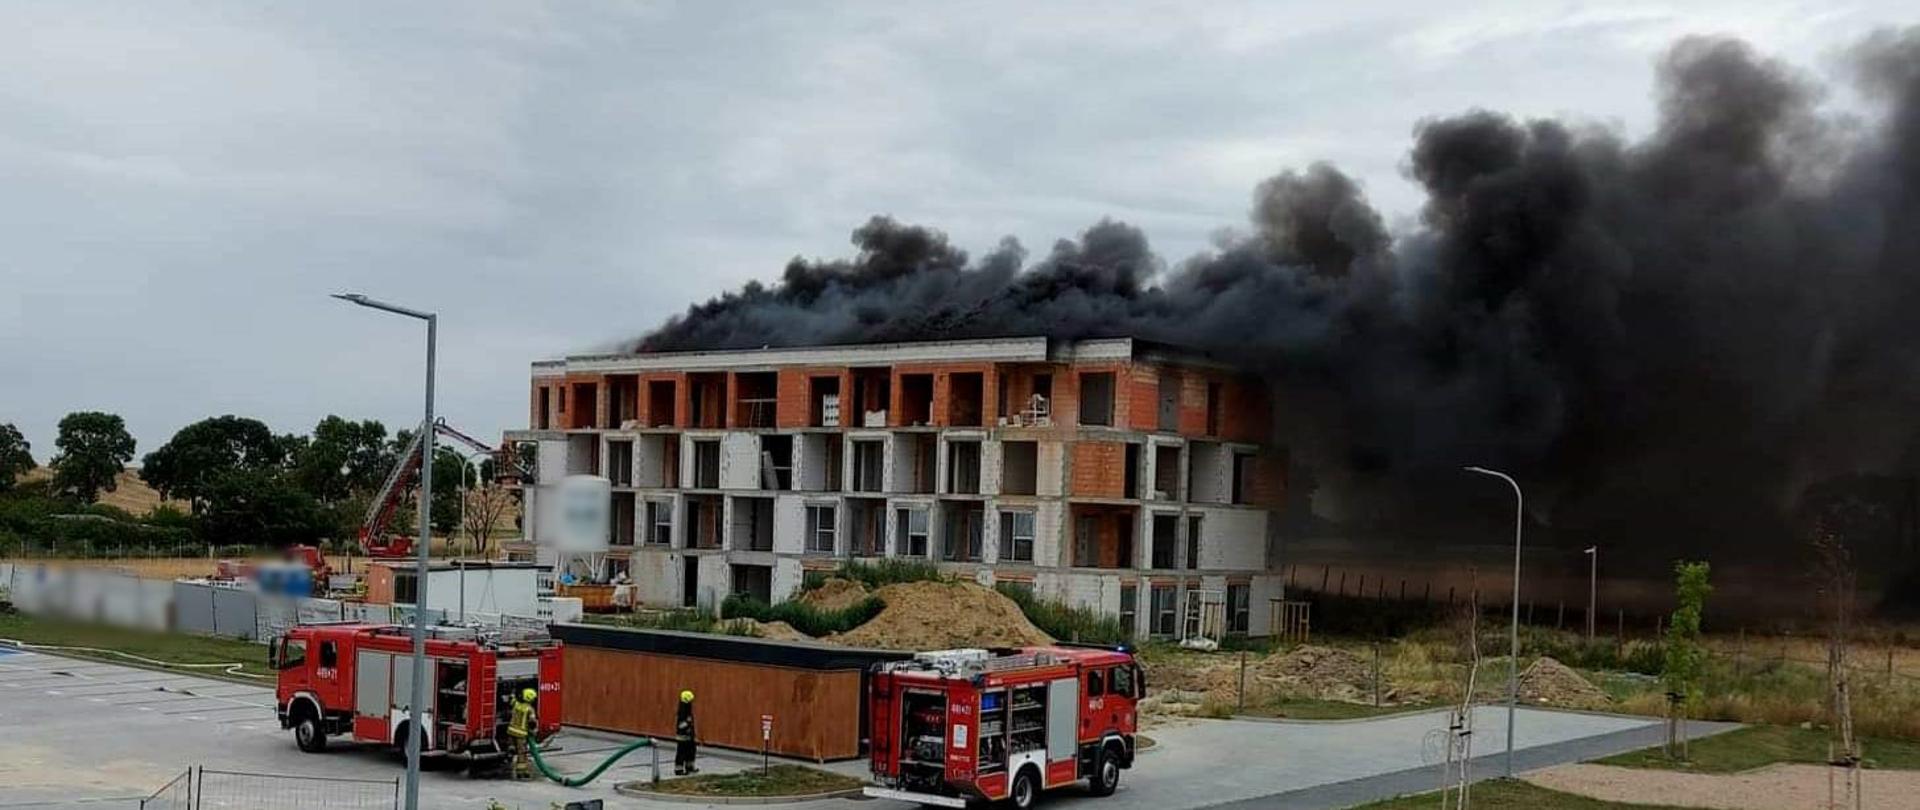 Obraz przedstawia płonący dach budowanego budynku wielorodzinnego. Widoczny czarny dym. Przed budynkiem pojazdy pożarnicze. Pora dzienna.